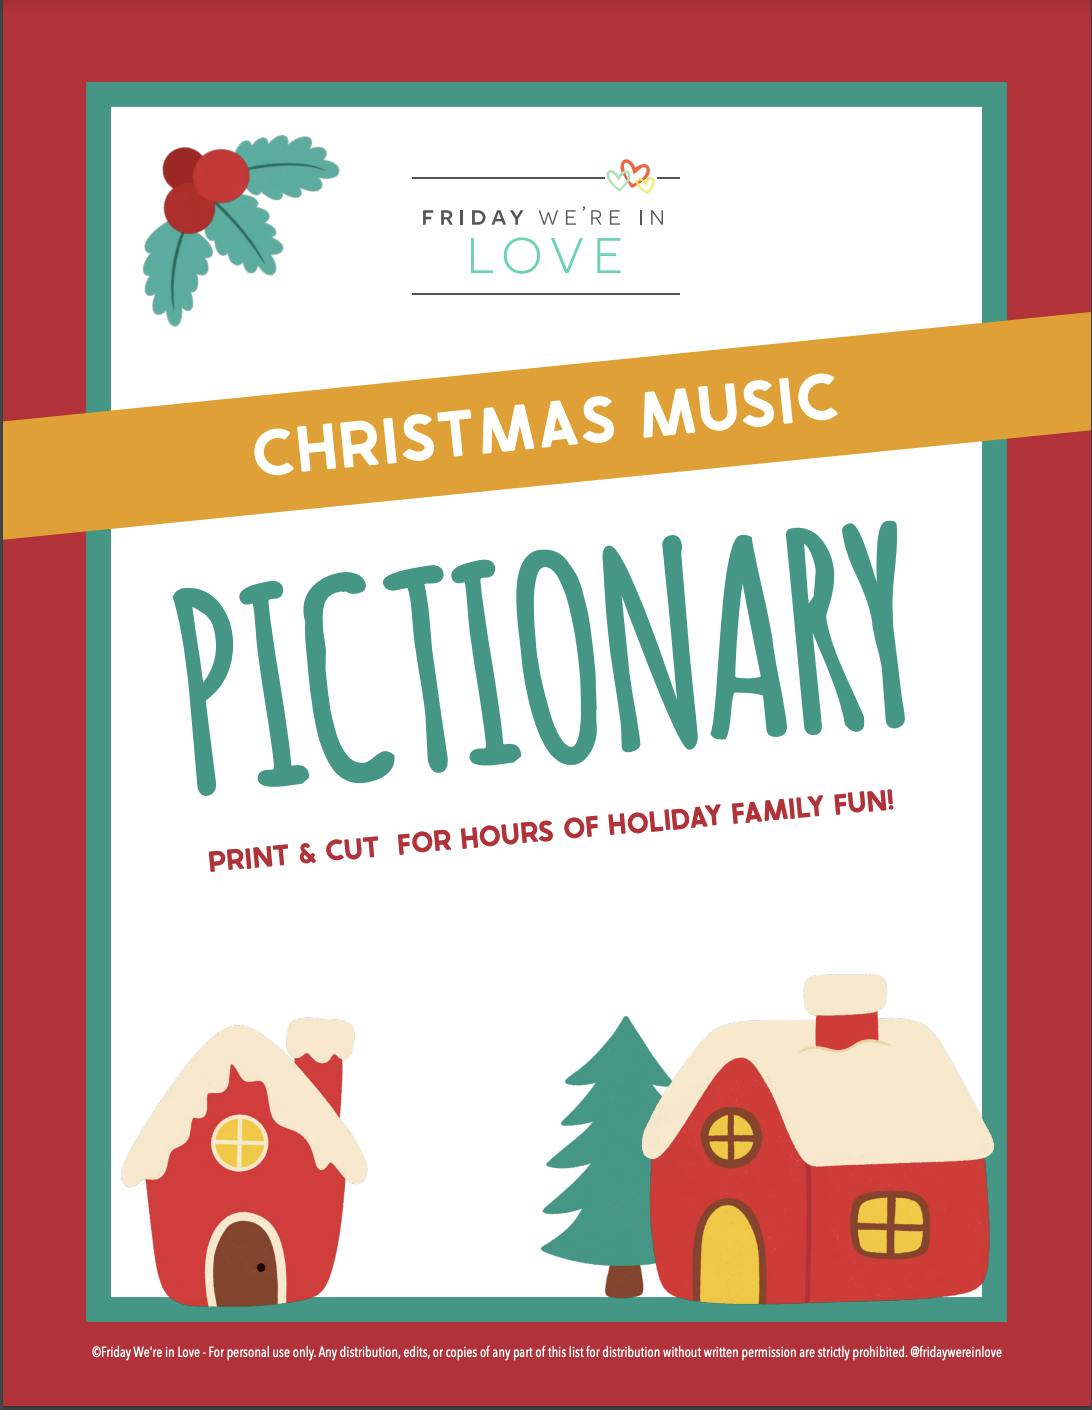 Christmas Pictionary game with Christmas music printable. 